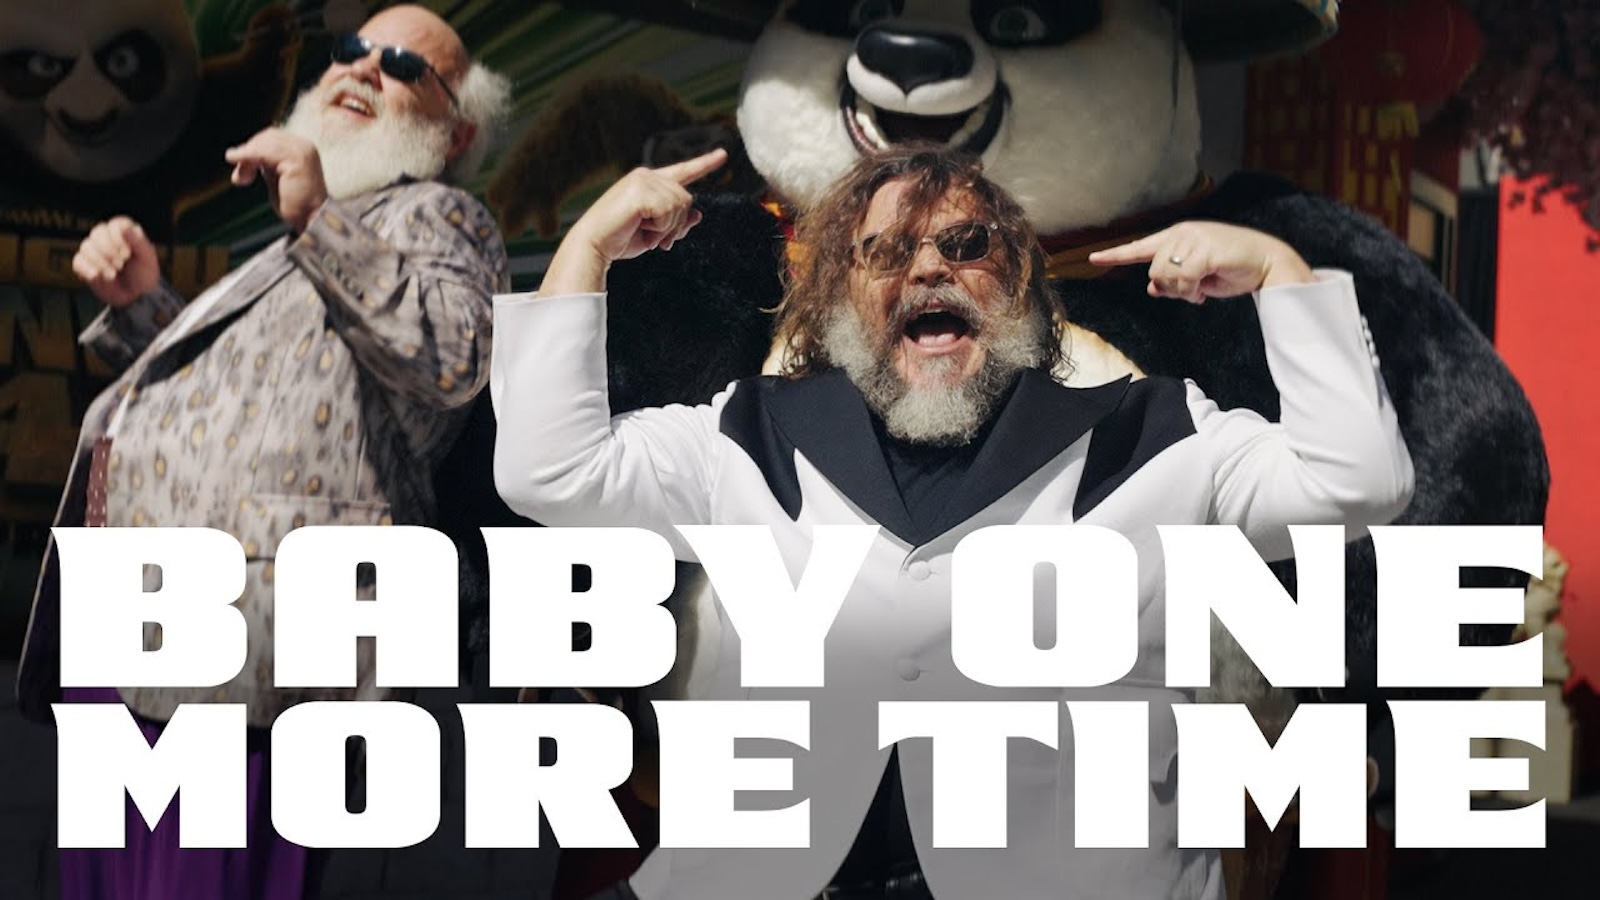 Kung Fu panda 4, Jack Black pubblica il videoclip di Baby One More Time girato alla premiere